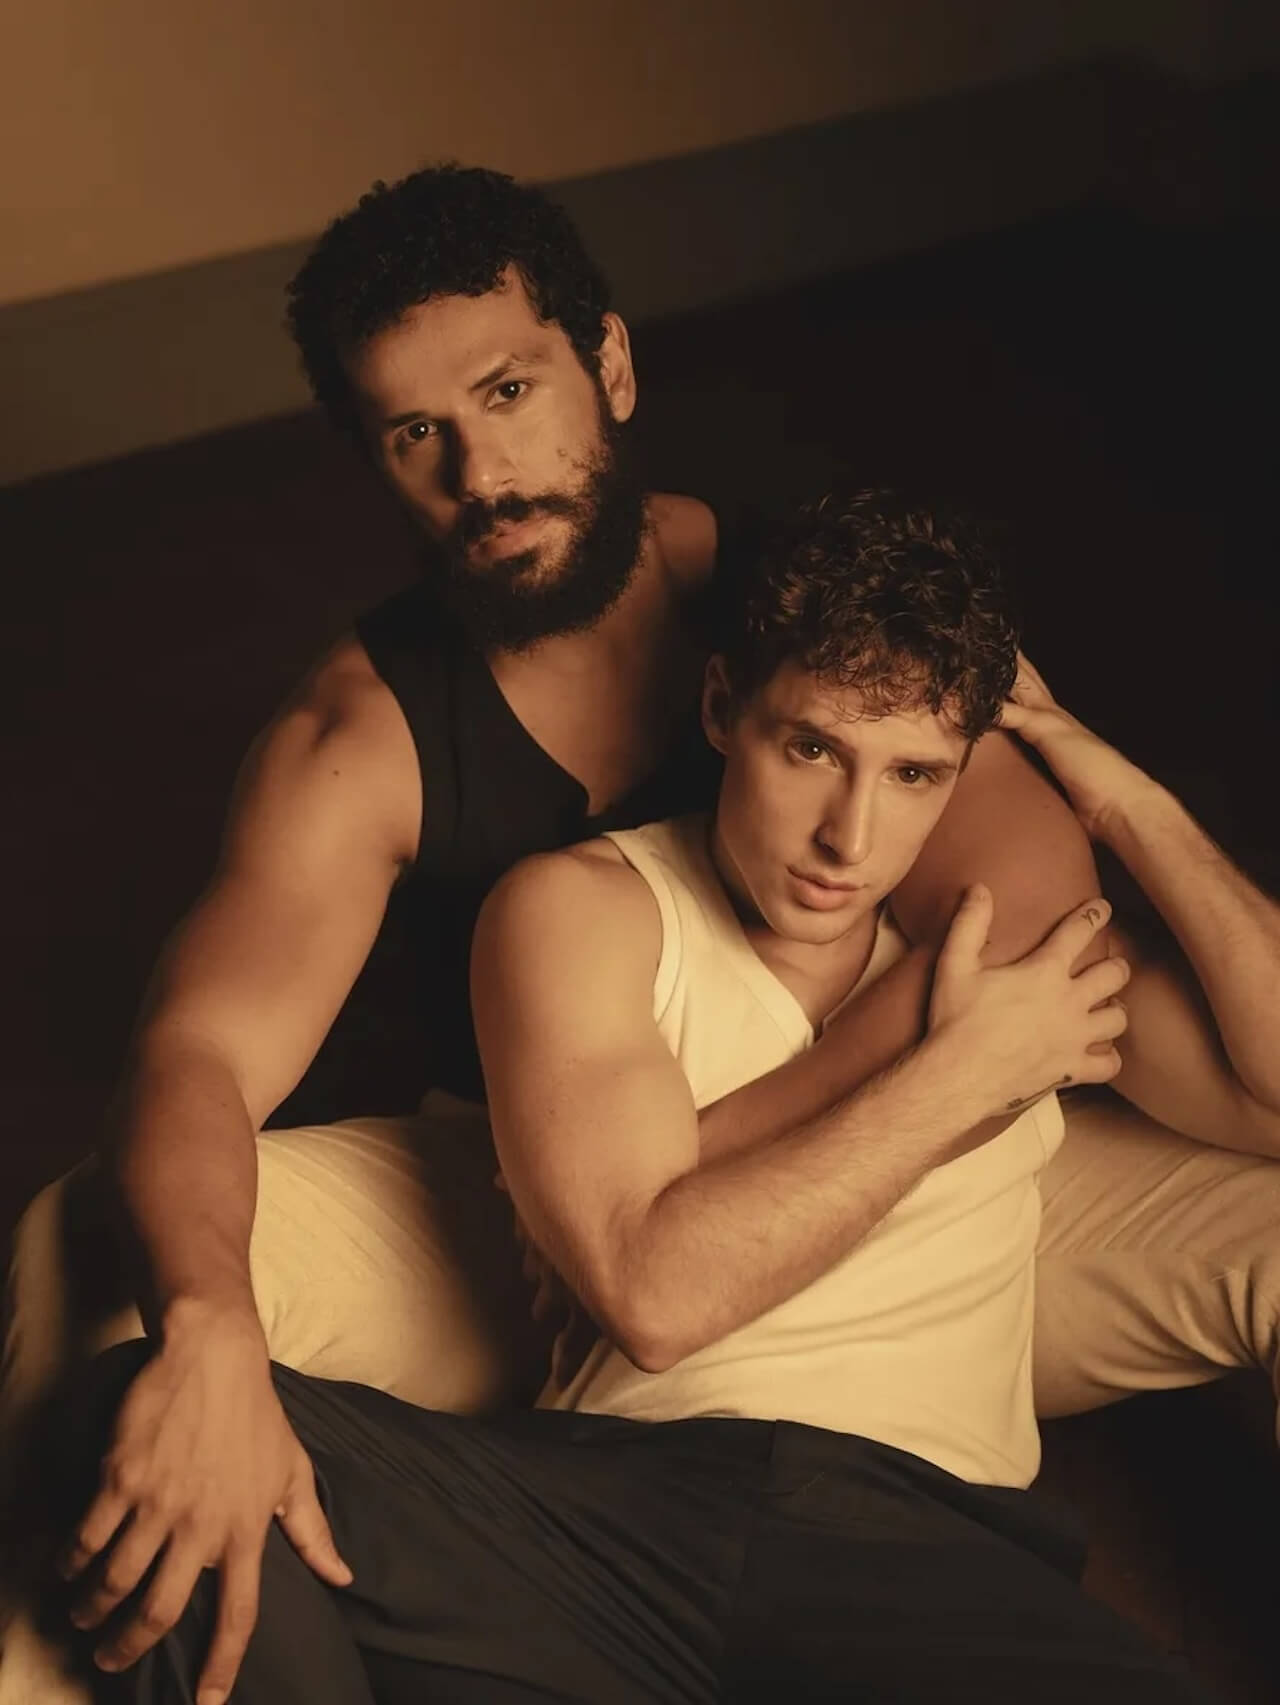 Terra e Paixão, storico bacio gay nella prima serata brasiliana e minacce di morte per i due attori - VIDEO - KELMIRO 2 - Gay.it